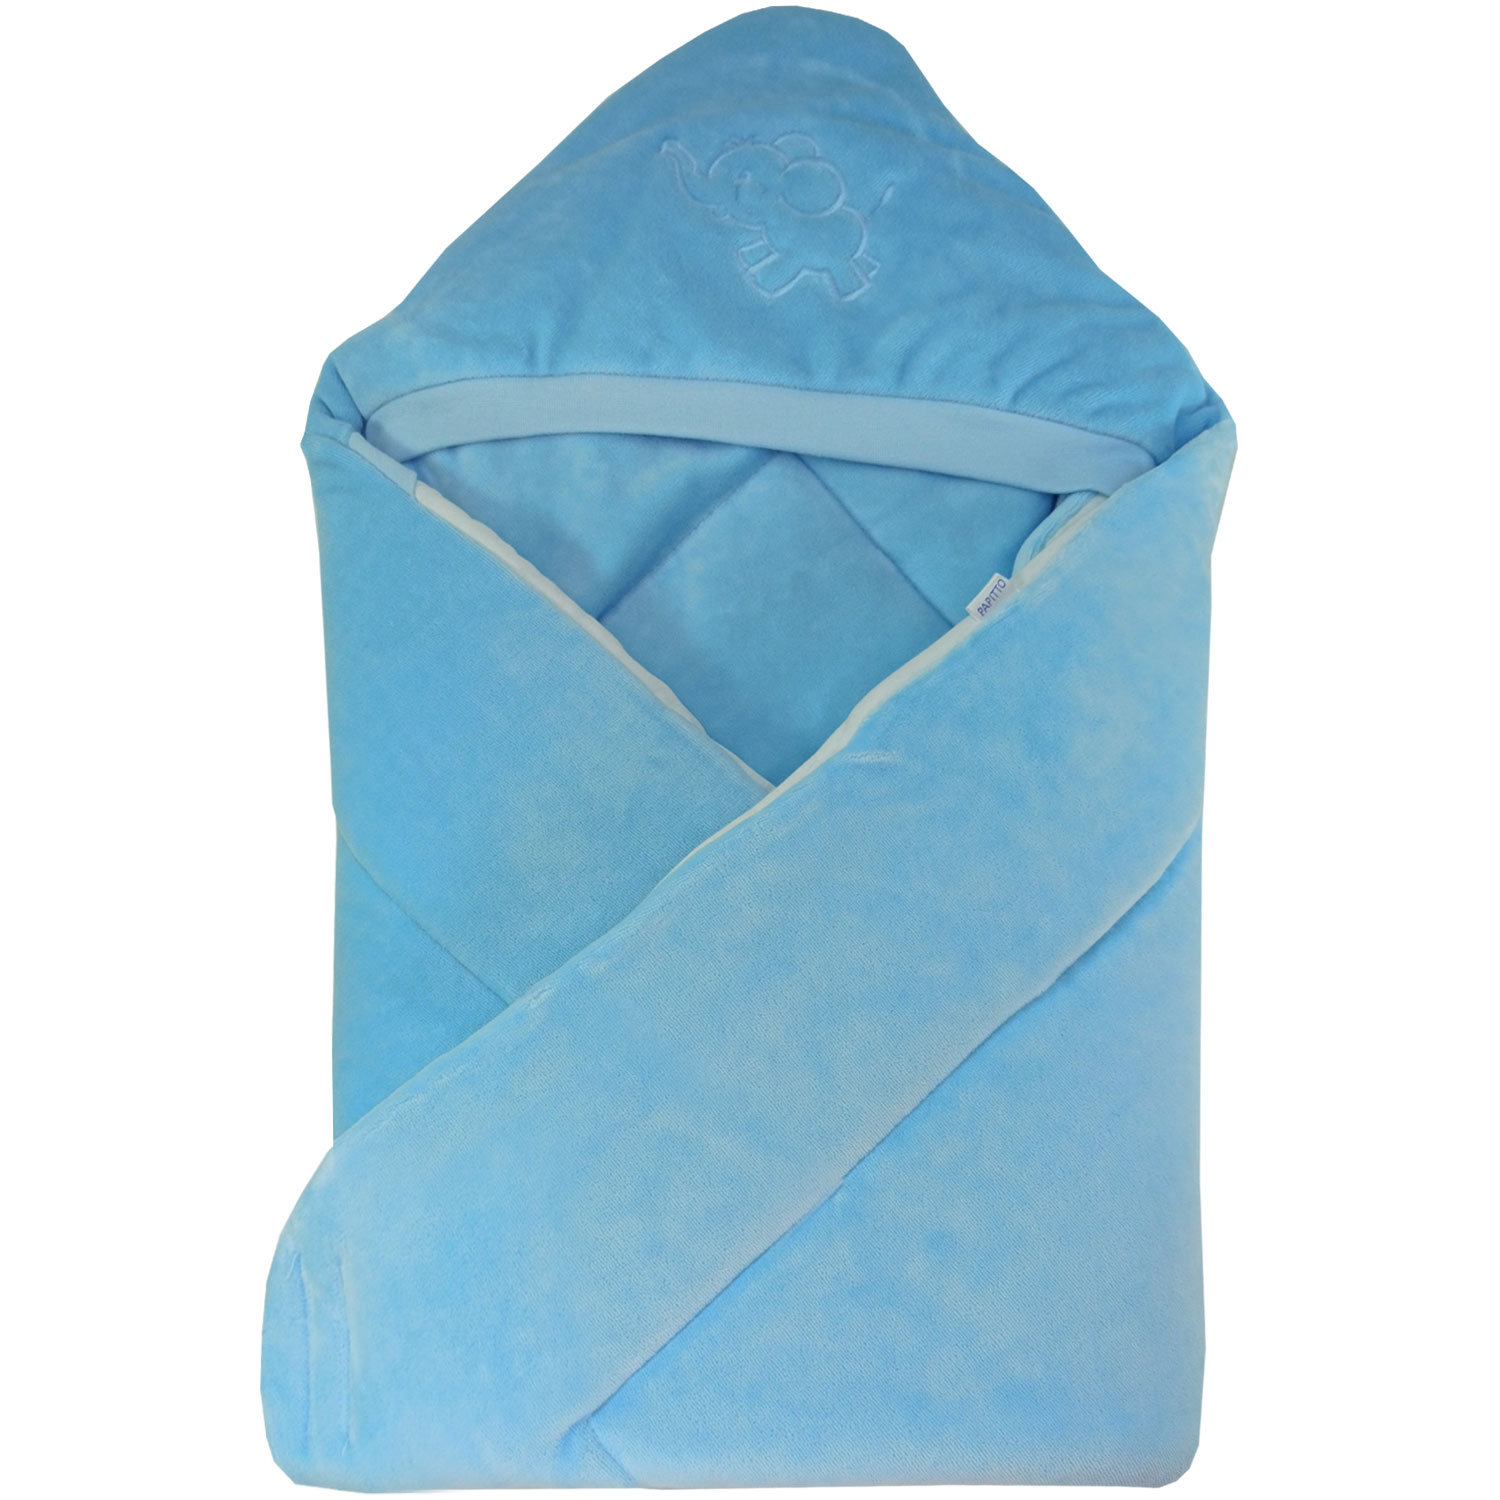 Конверт-одеяло Папитто велюр с вышивкой Голубой 2157 ангелочки конверт одеяло птица с вышивкой